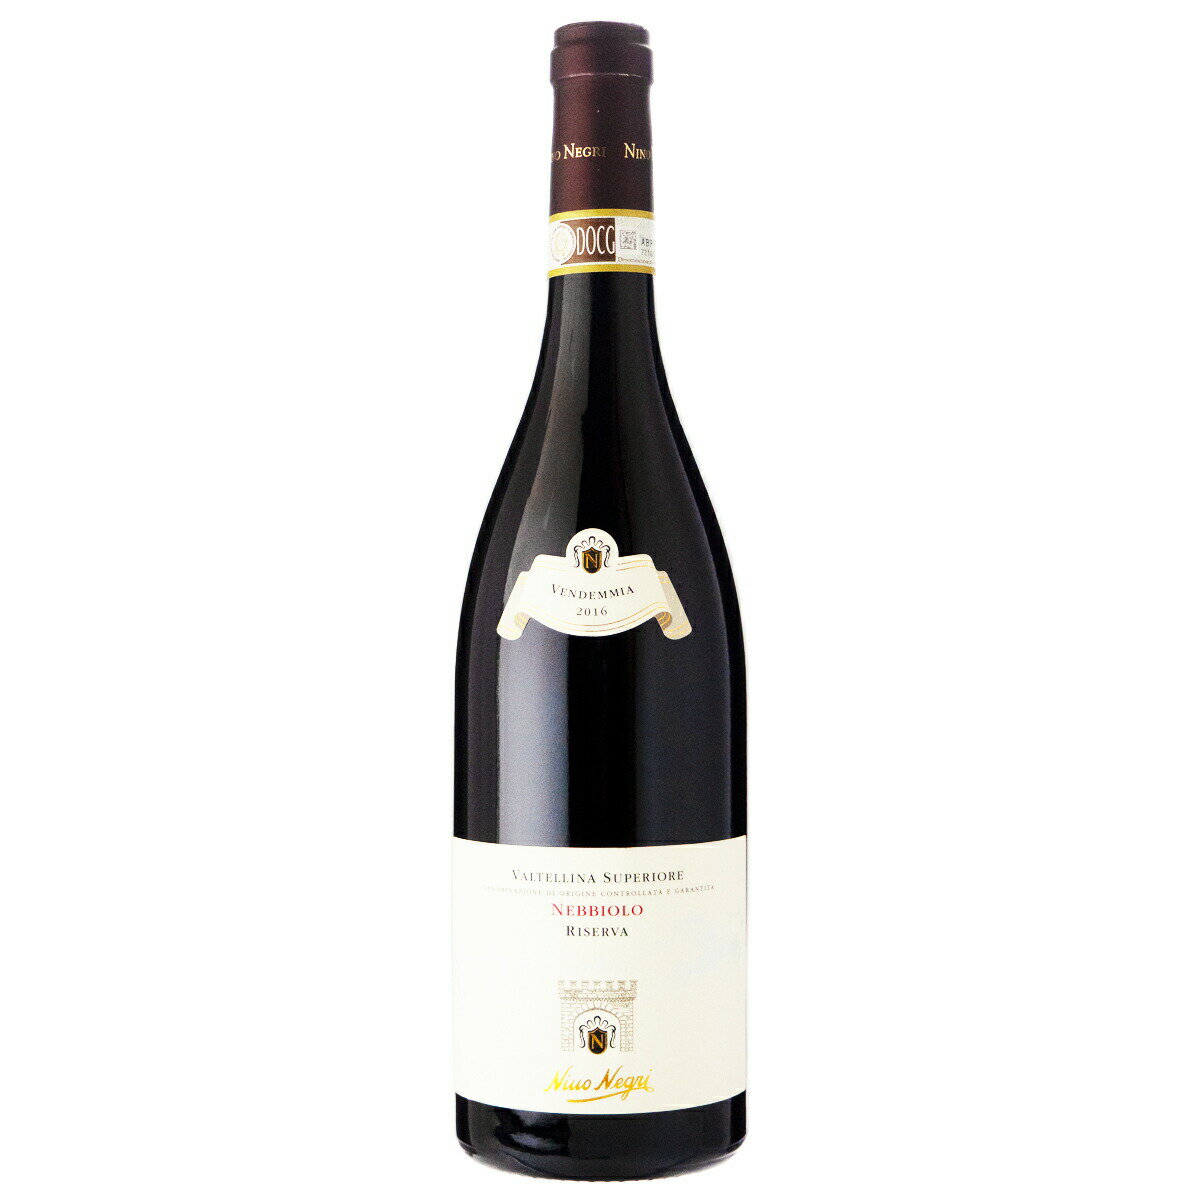 ニーノ ネグリ ヴァルテッリーナ スペリオーレ リゼルヴァ 2016 750ml 赤ワイン イタリア (e02-286)